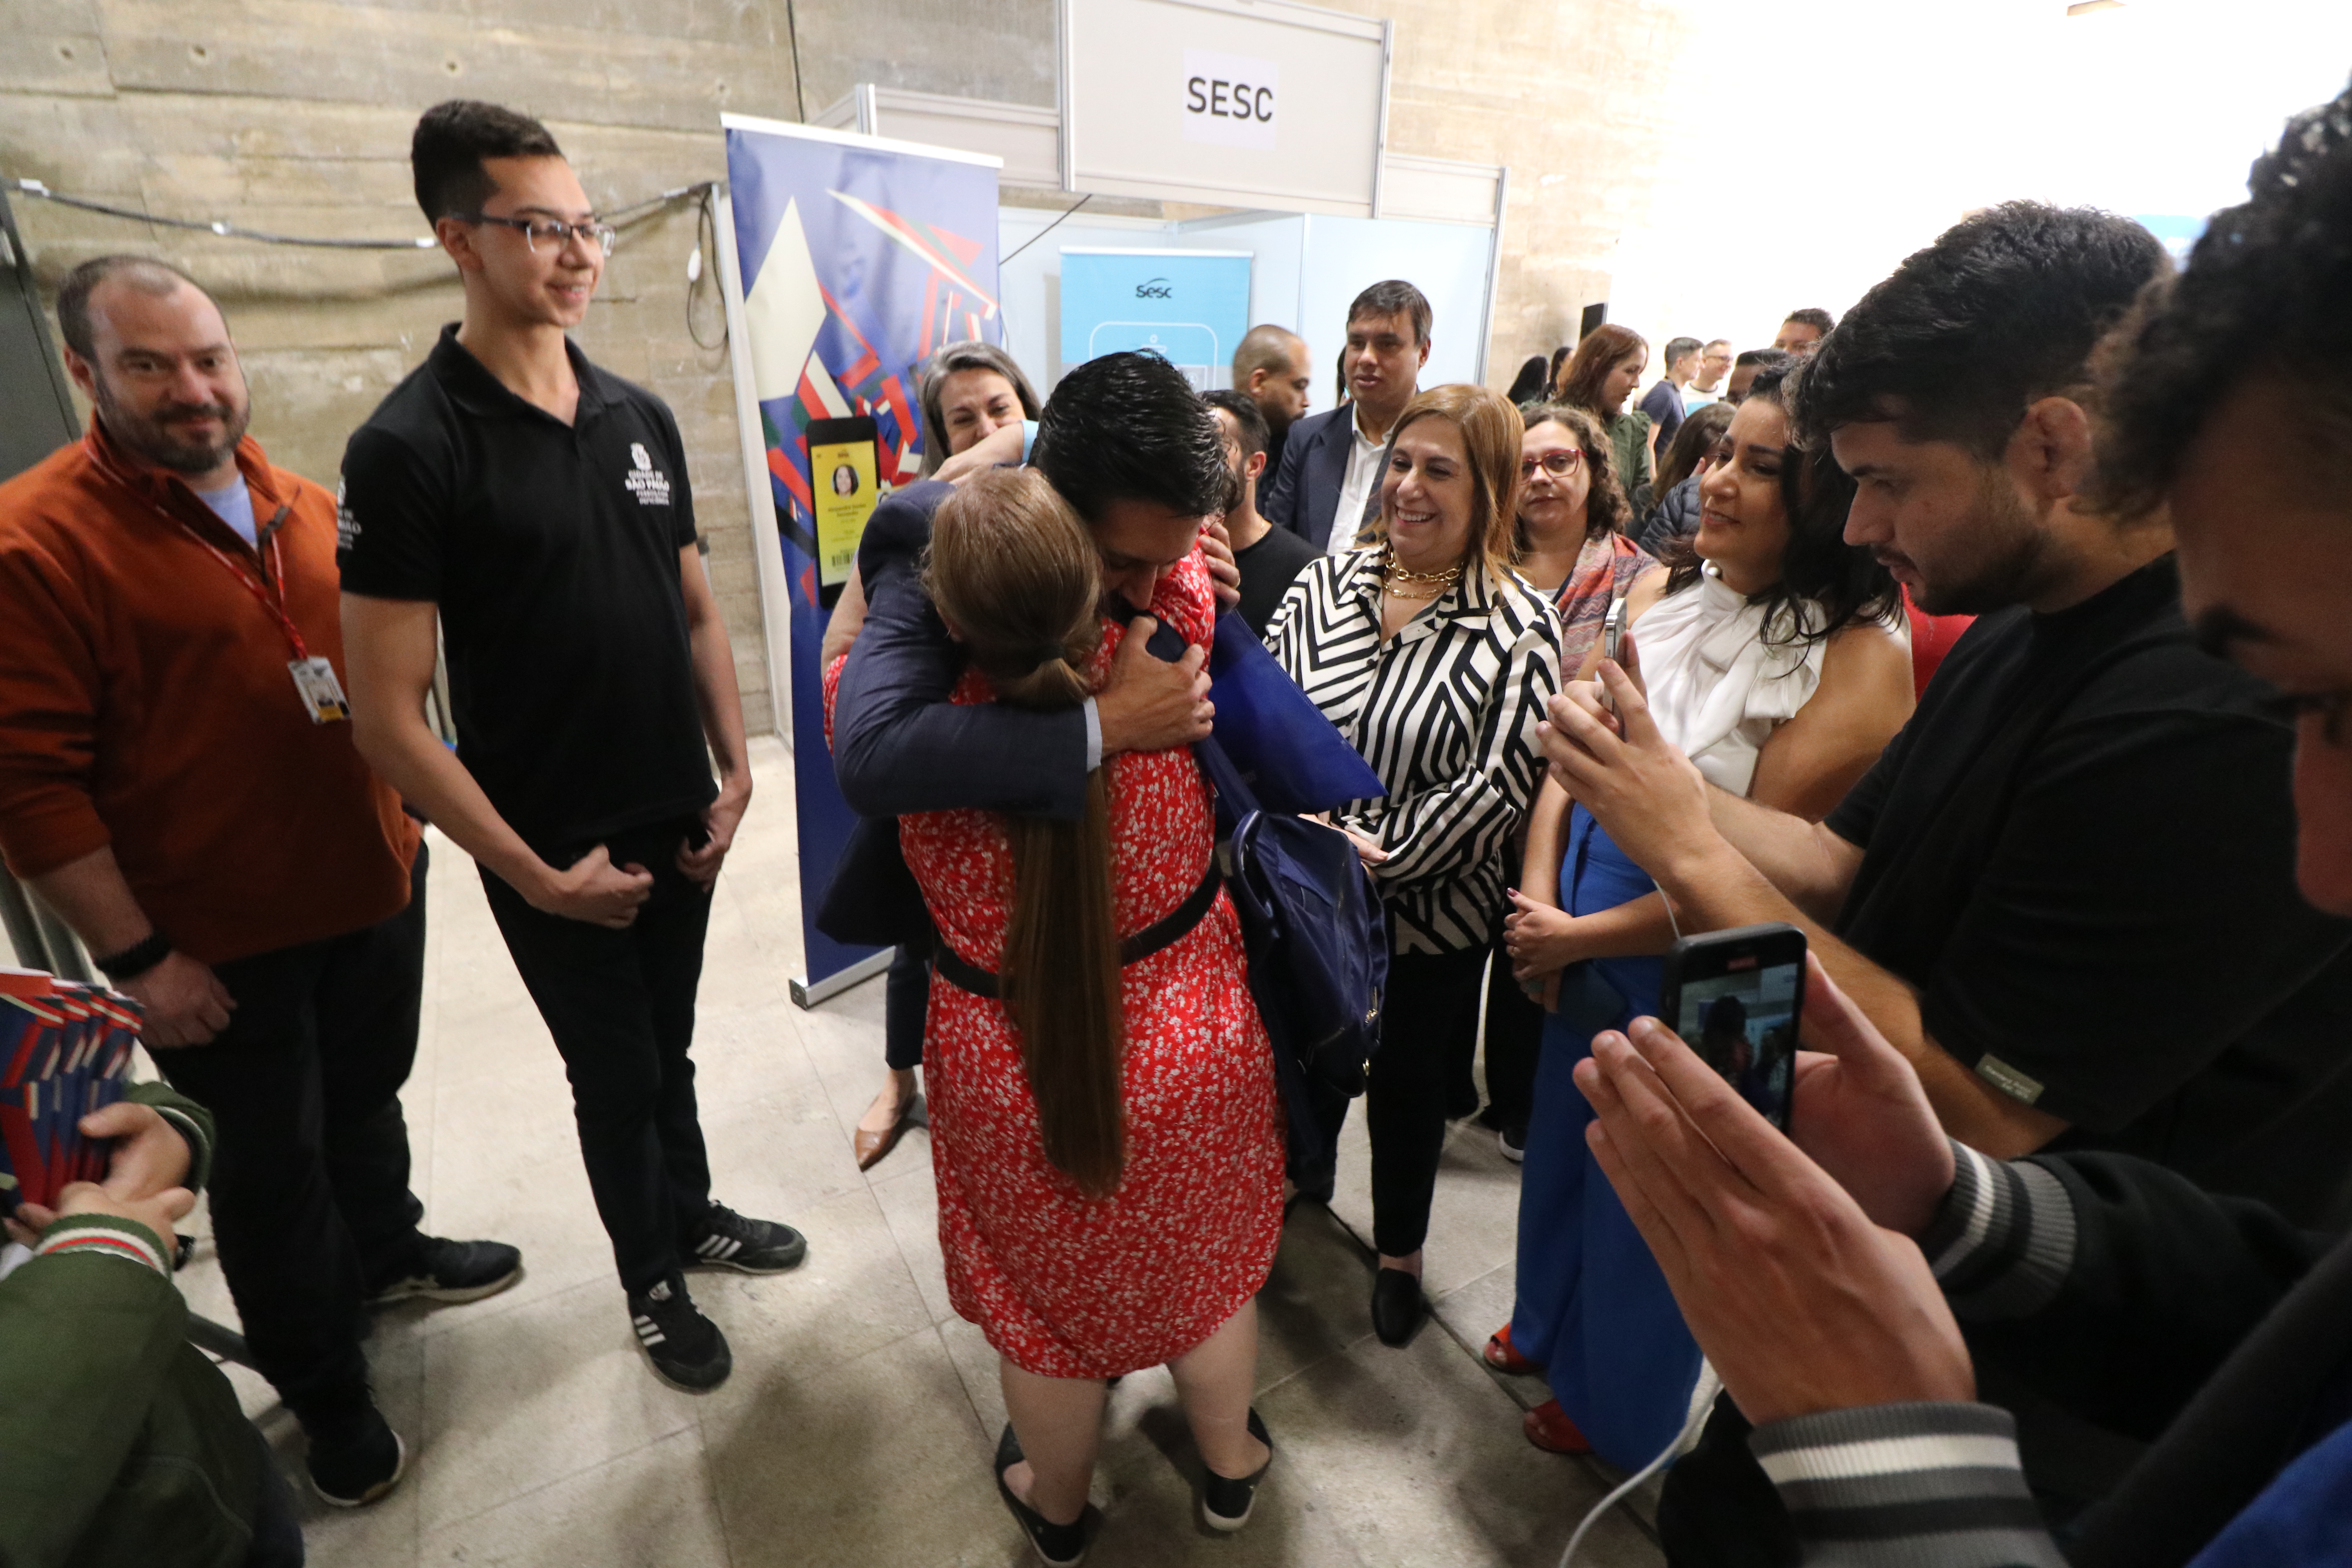 Prefeito Ricardo Nunes abraçando uma mulher. Em volta há autoridades e pessoas que estão participando do mutirão.